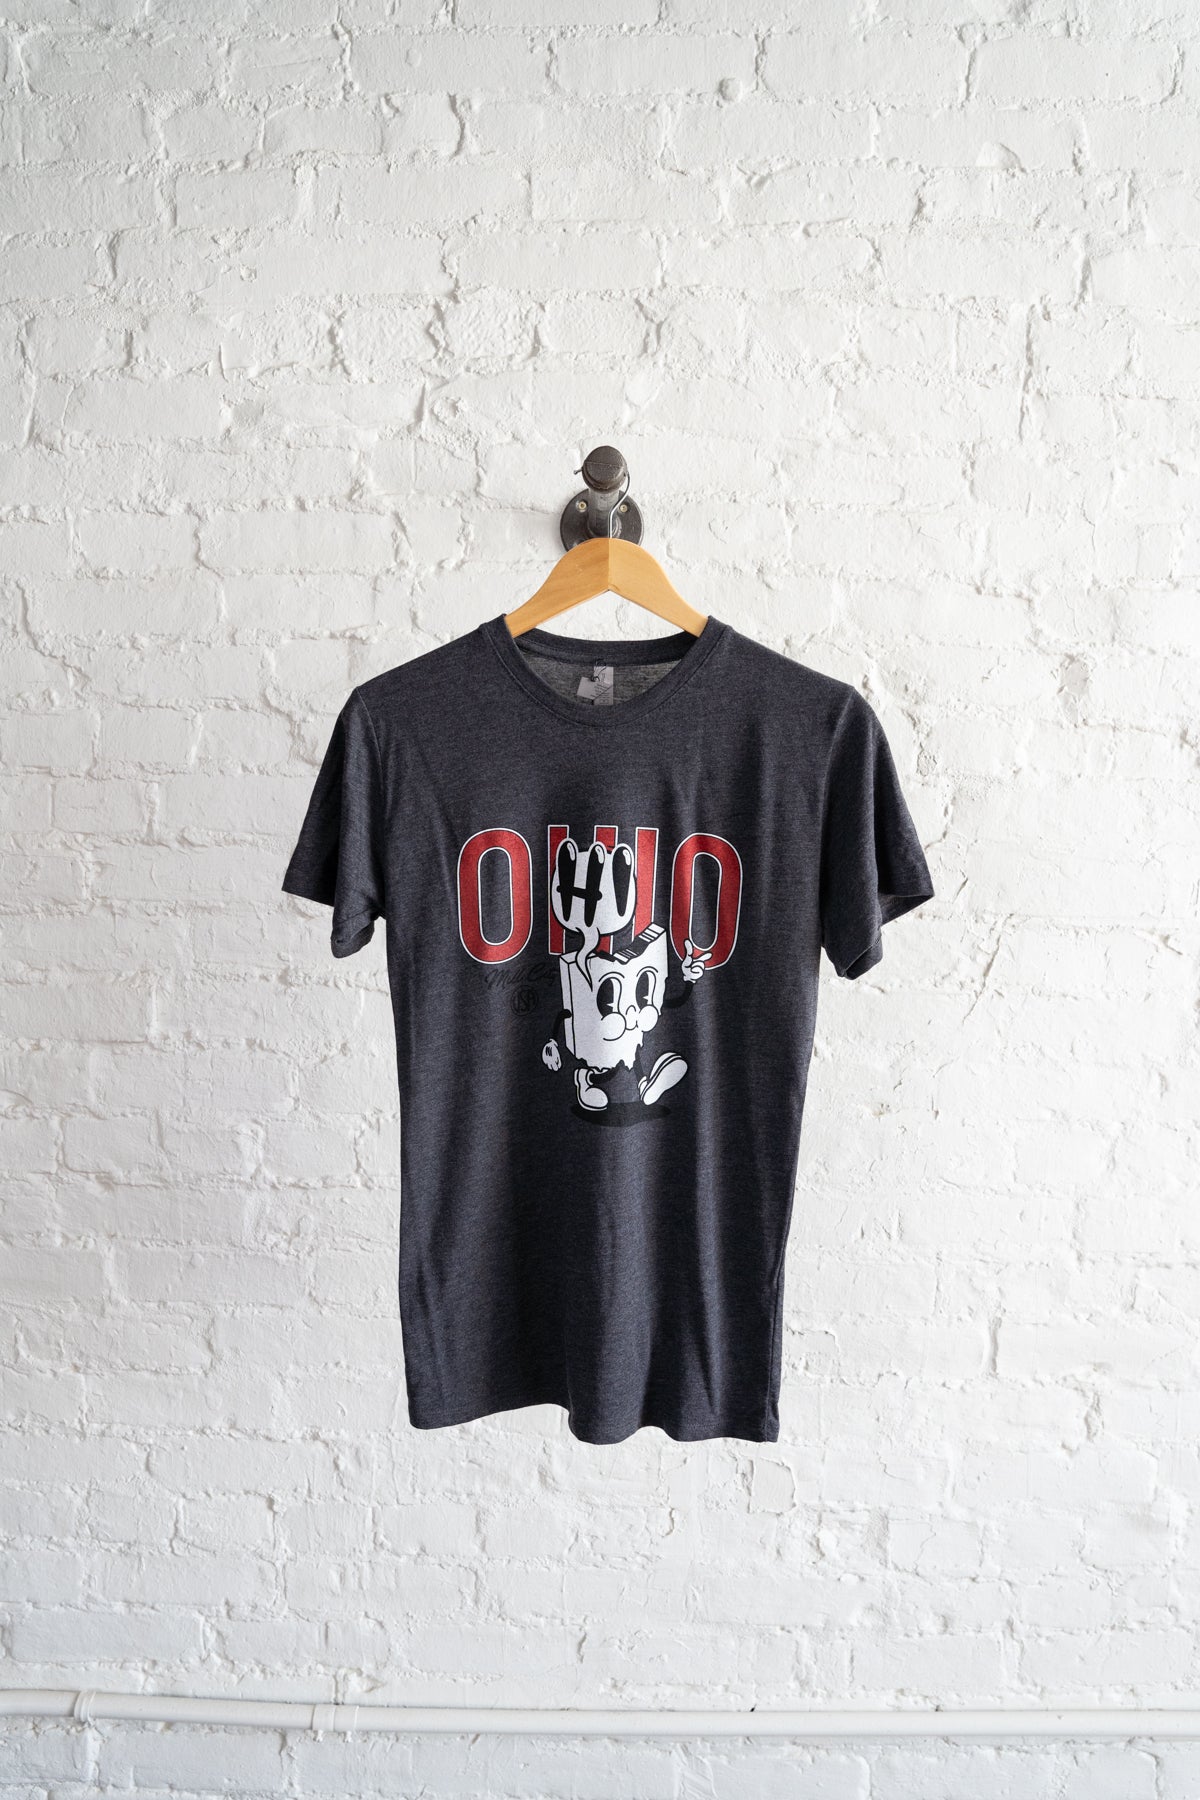 O"HI"O T-Shirt